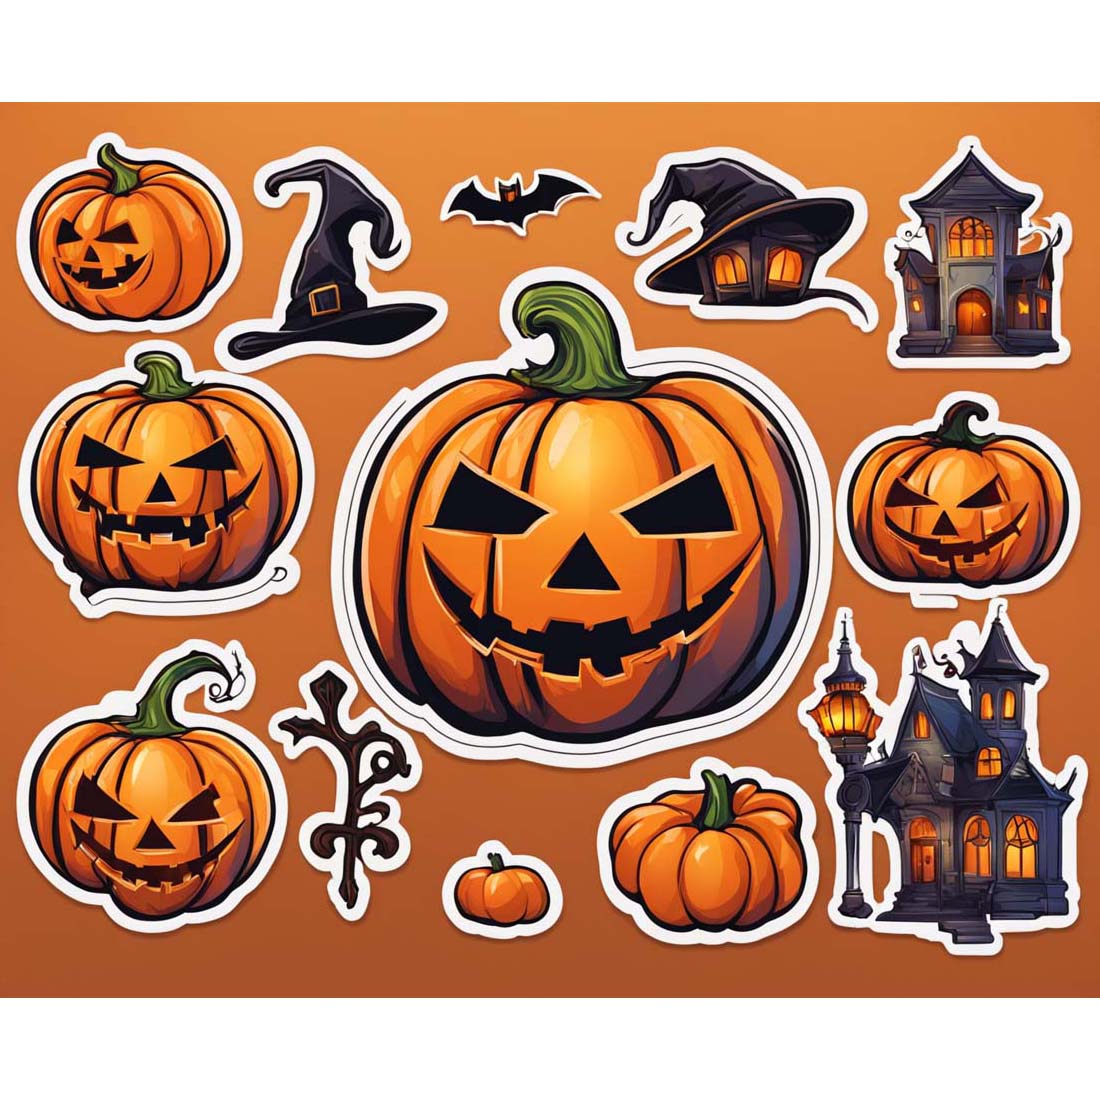 Halloween pumpkin sticker pack preview image.